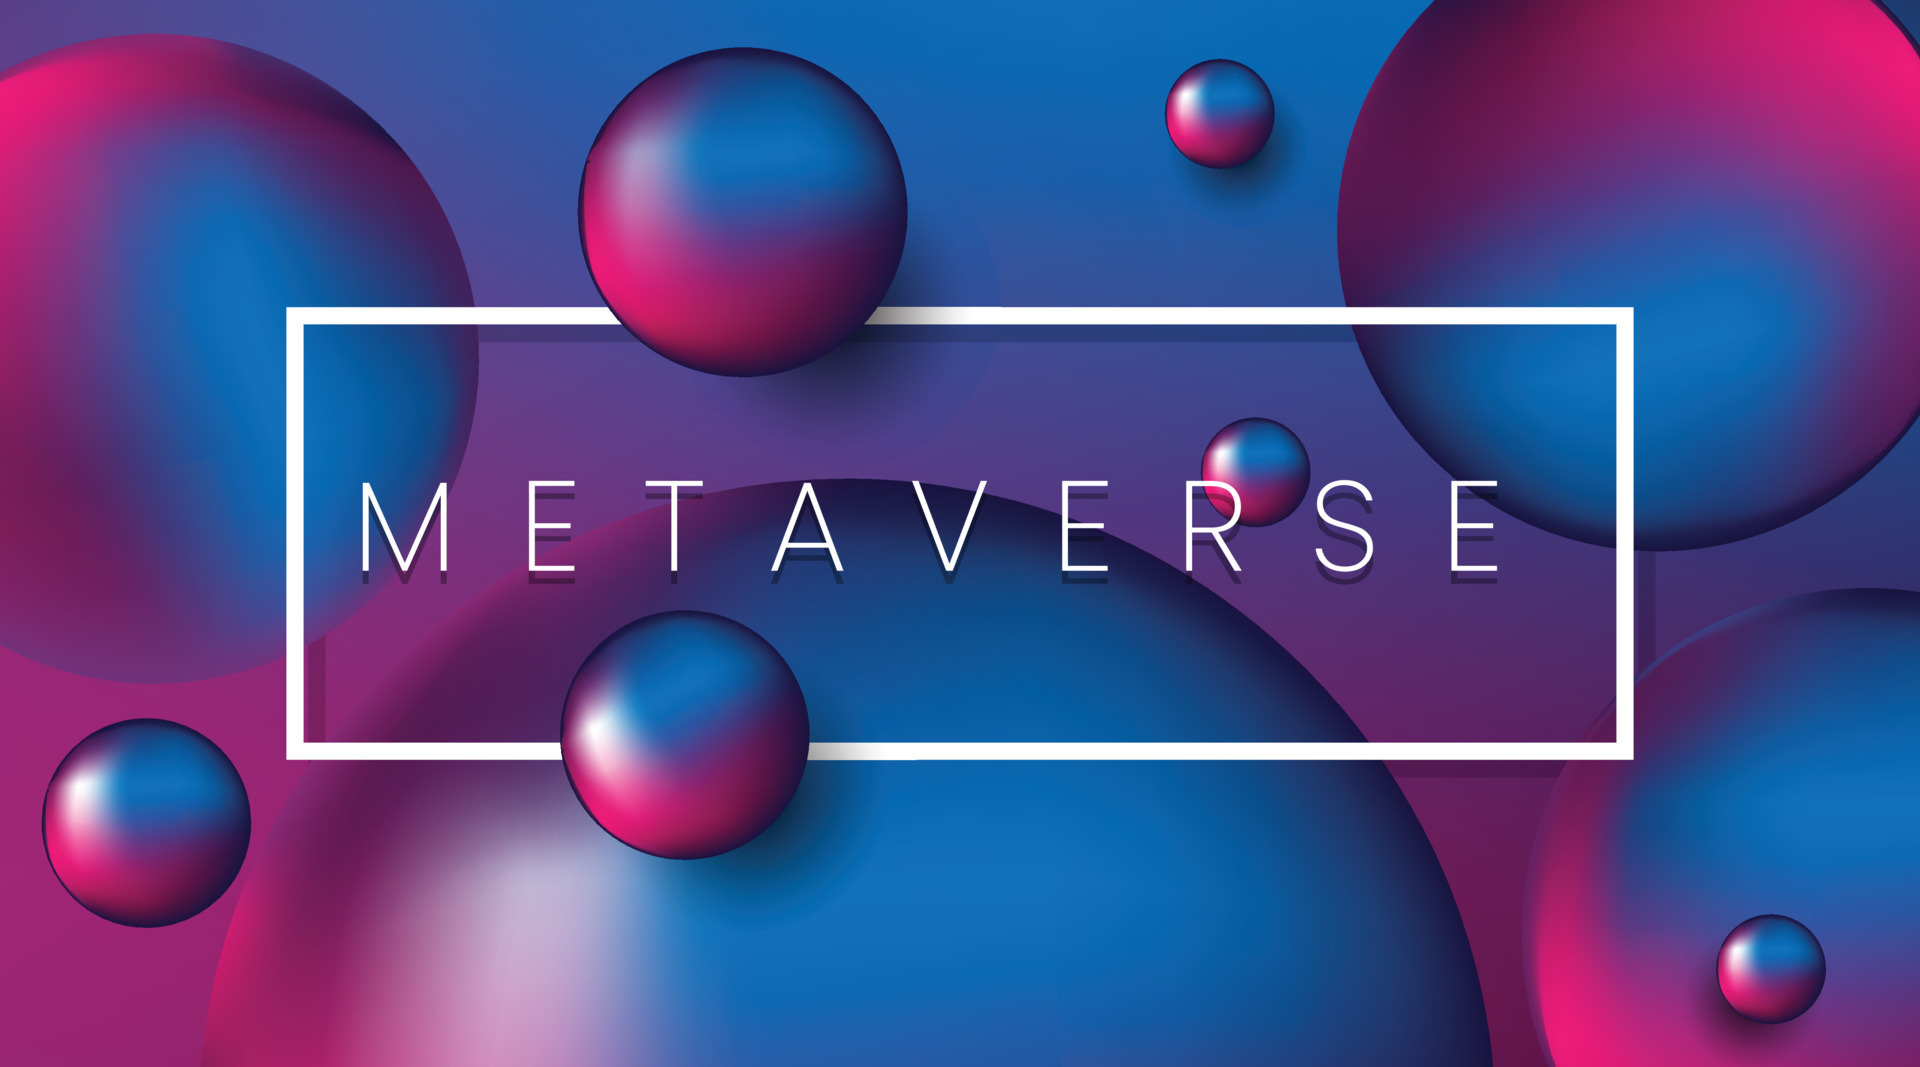 图片展示了多个漂浮的彩色球体，背景为渐变的蓝紫色调，中间有一个白框，框内写着“METAVERSE”字样。